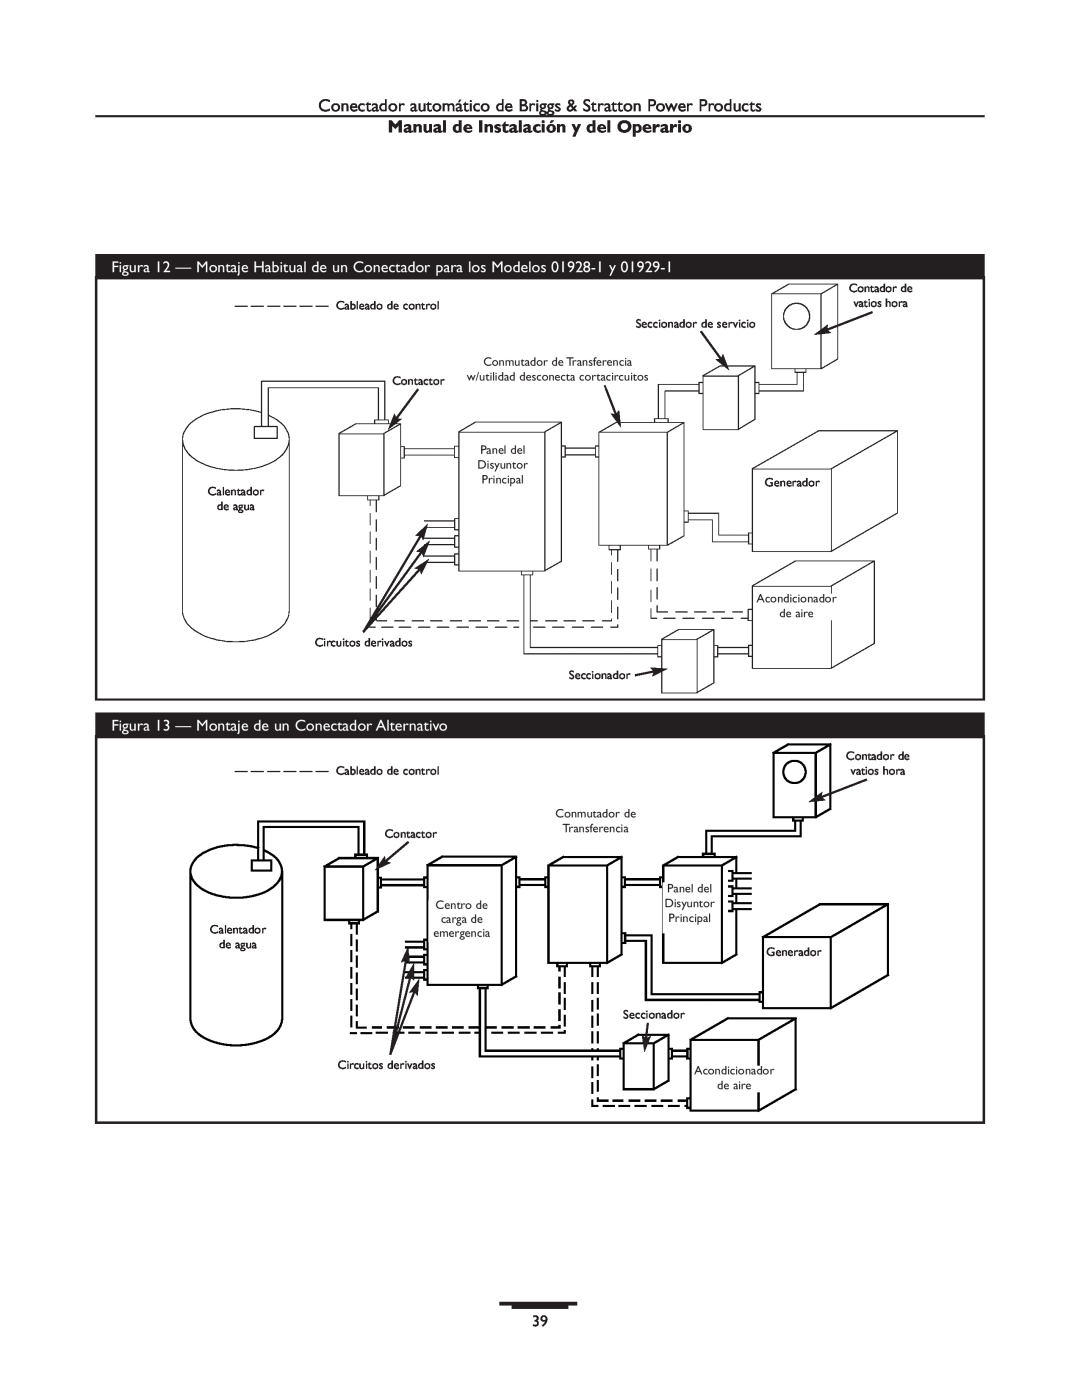 Briggs & Stratton 01813-1, 01928-1 Manual de Instalación y del Operario, Figura 13 - Montaje de un Conectador Alternativo 